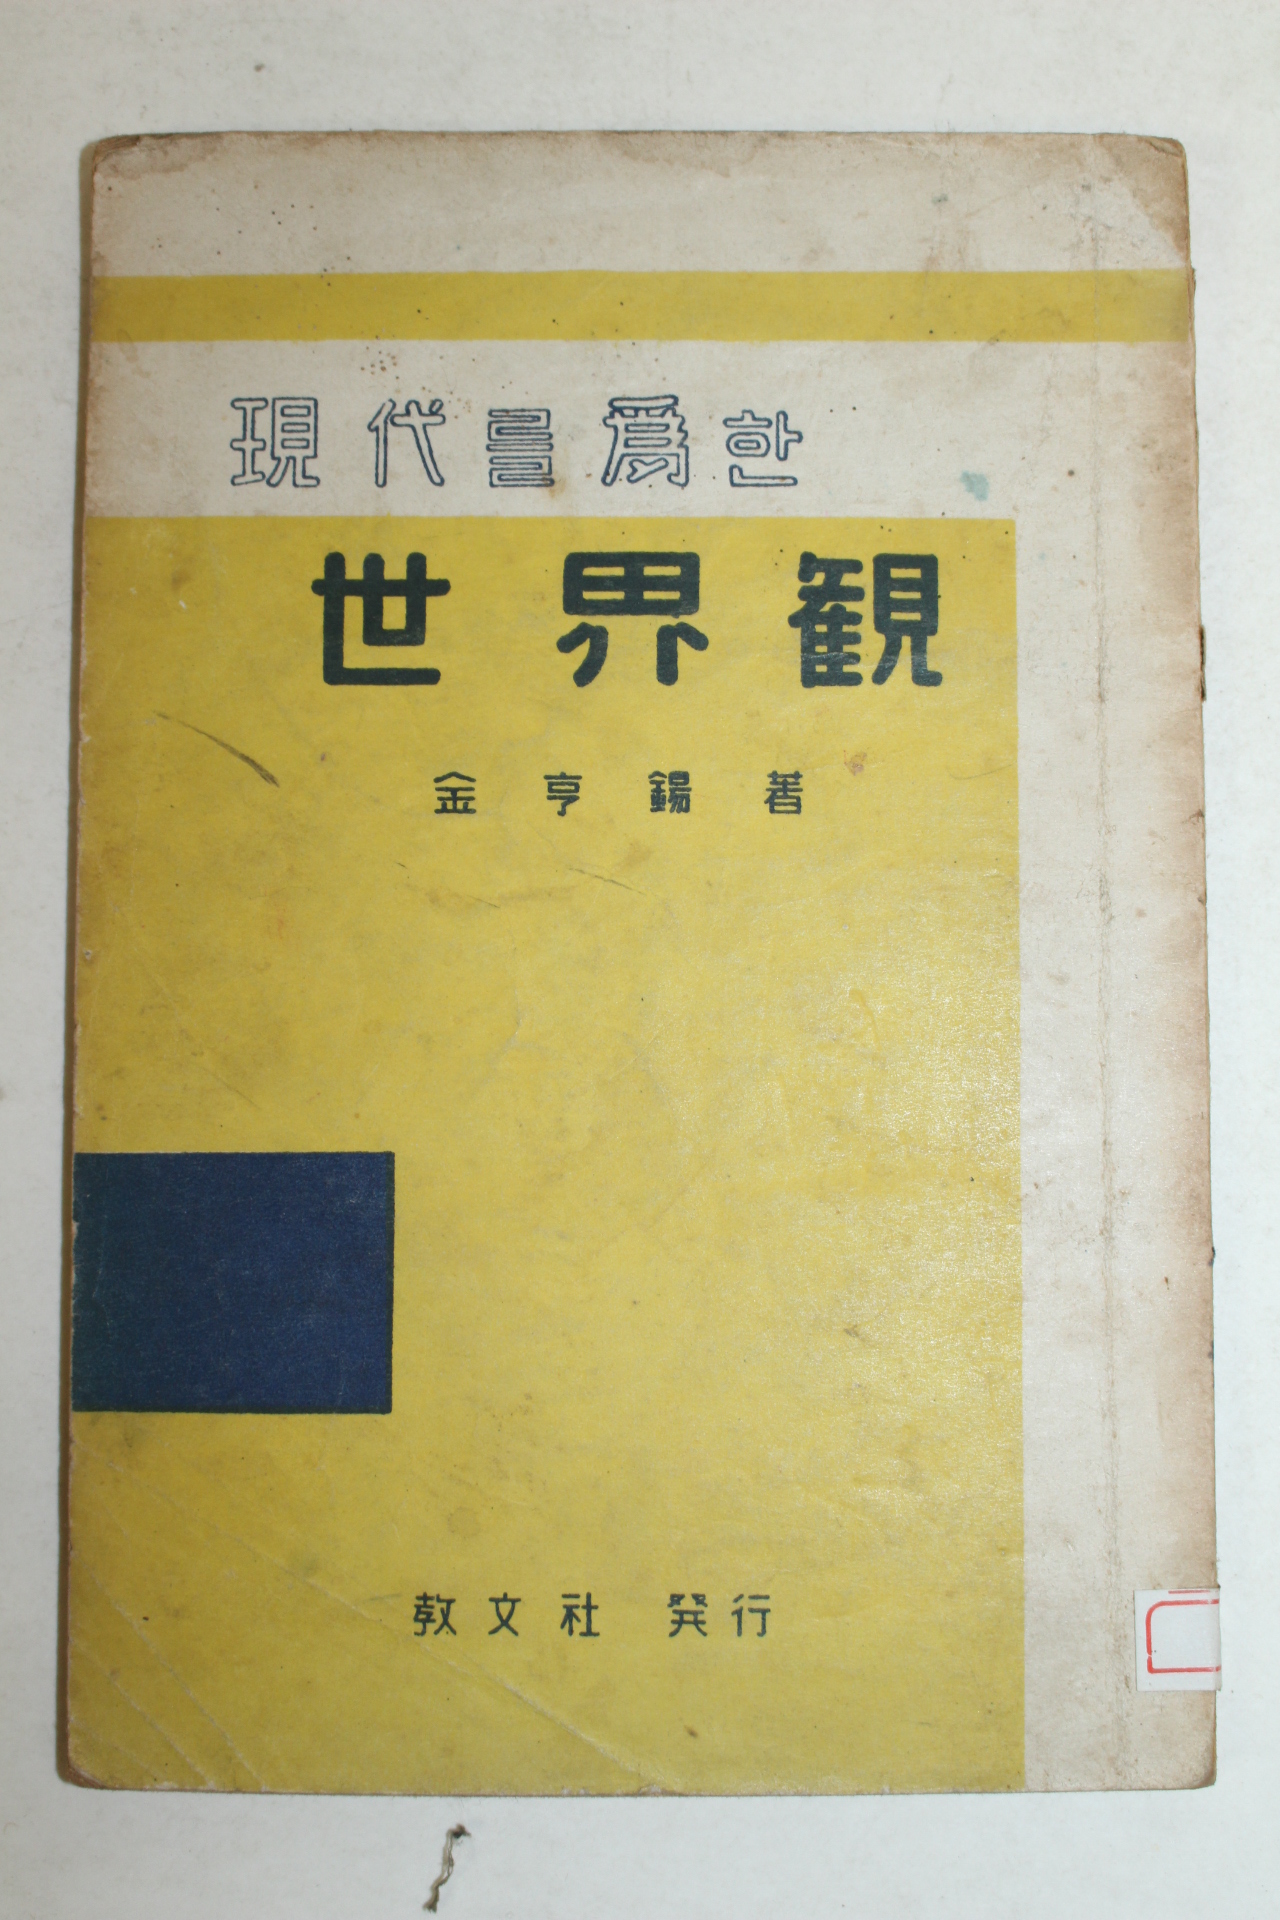 1957년 김형석(金亨錫) 현대를 위한 세계관